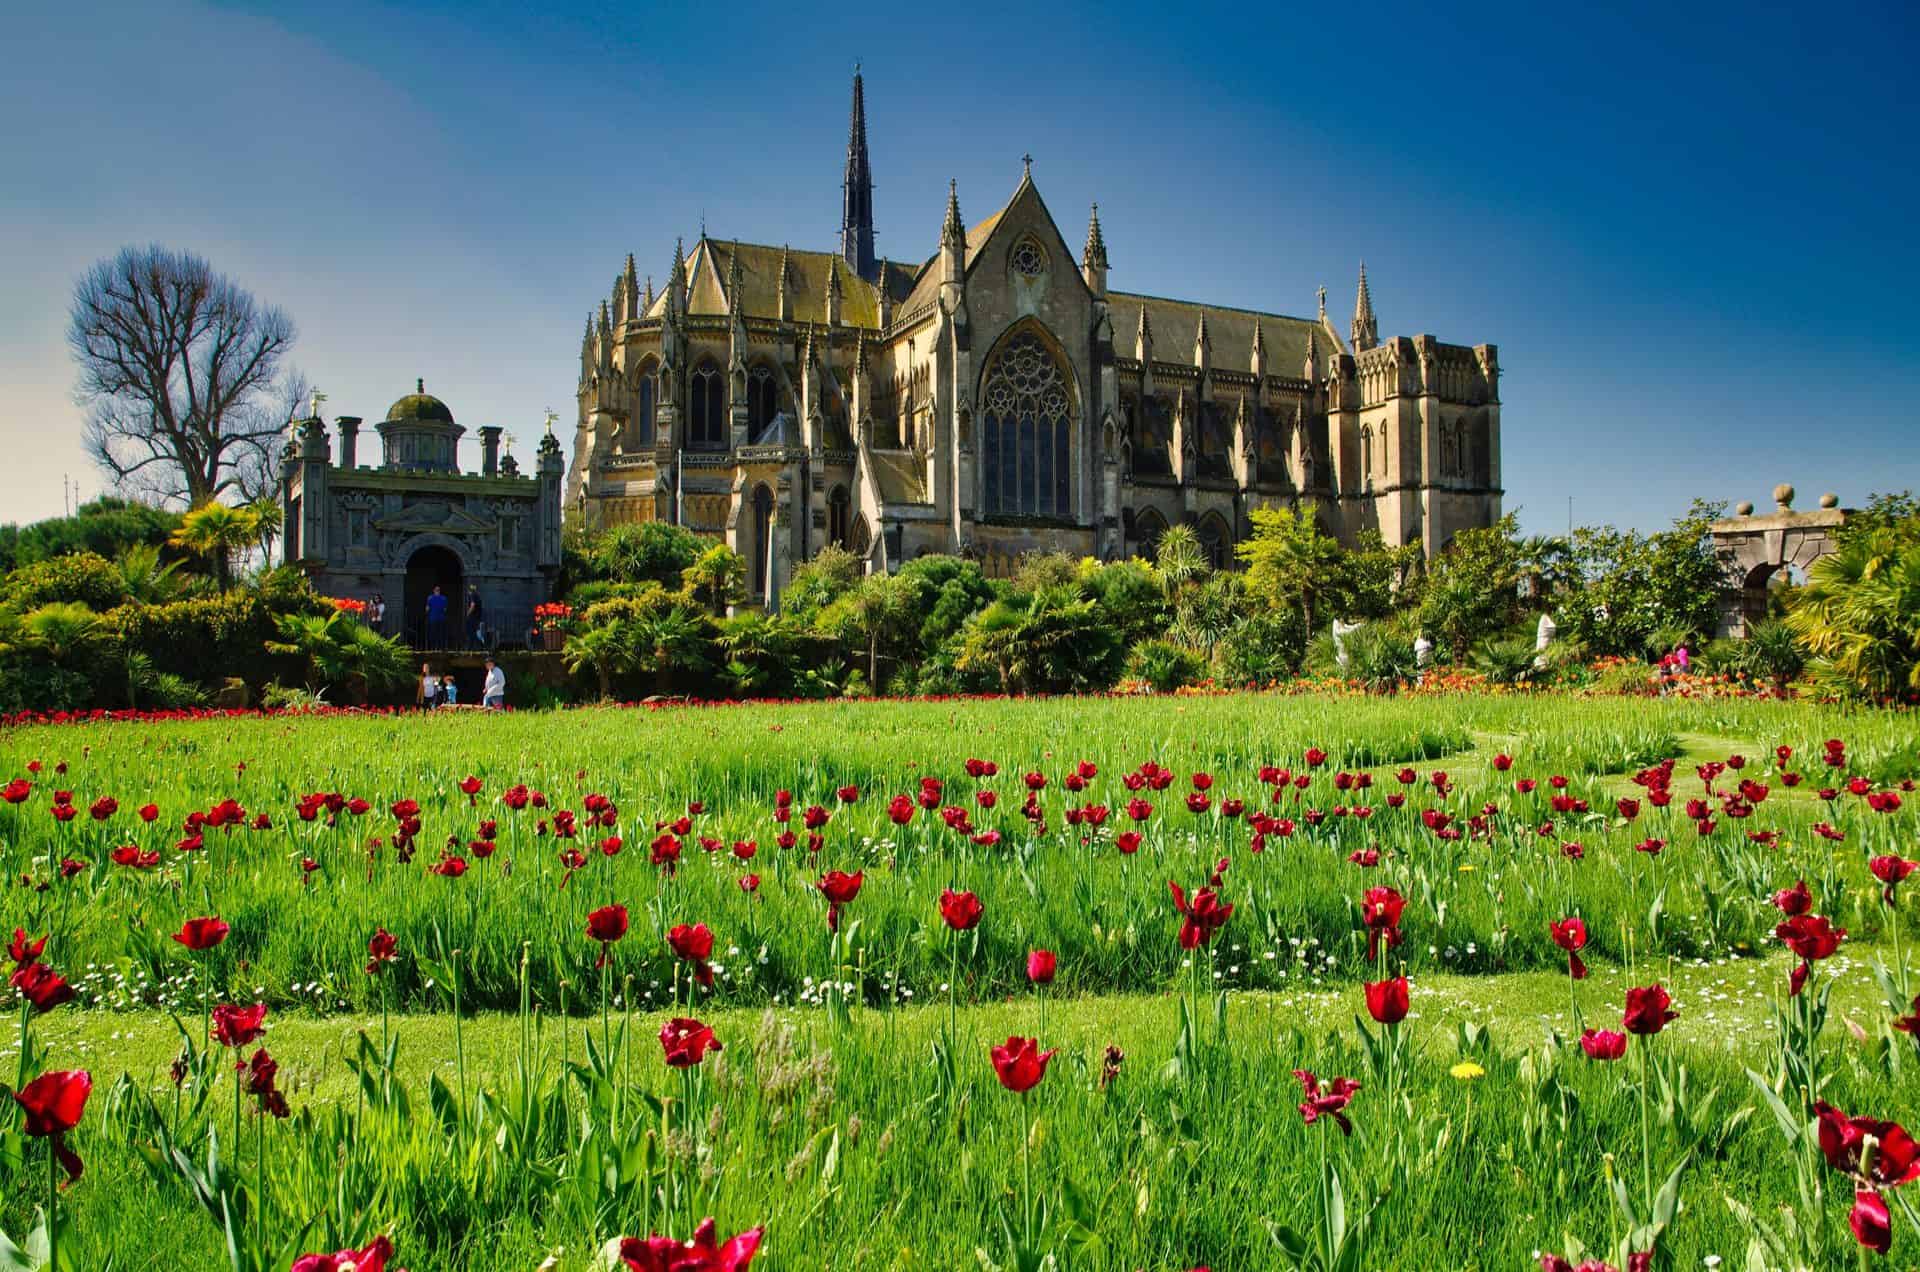 A stunning UK castle with a flower garden